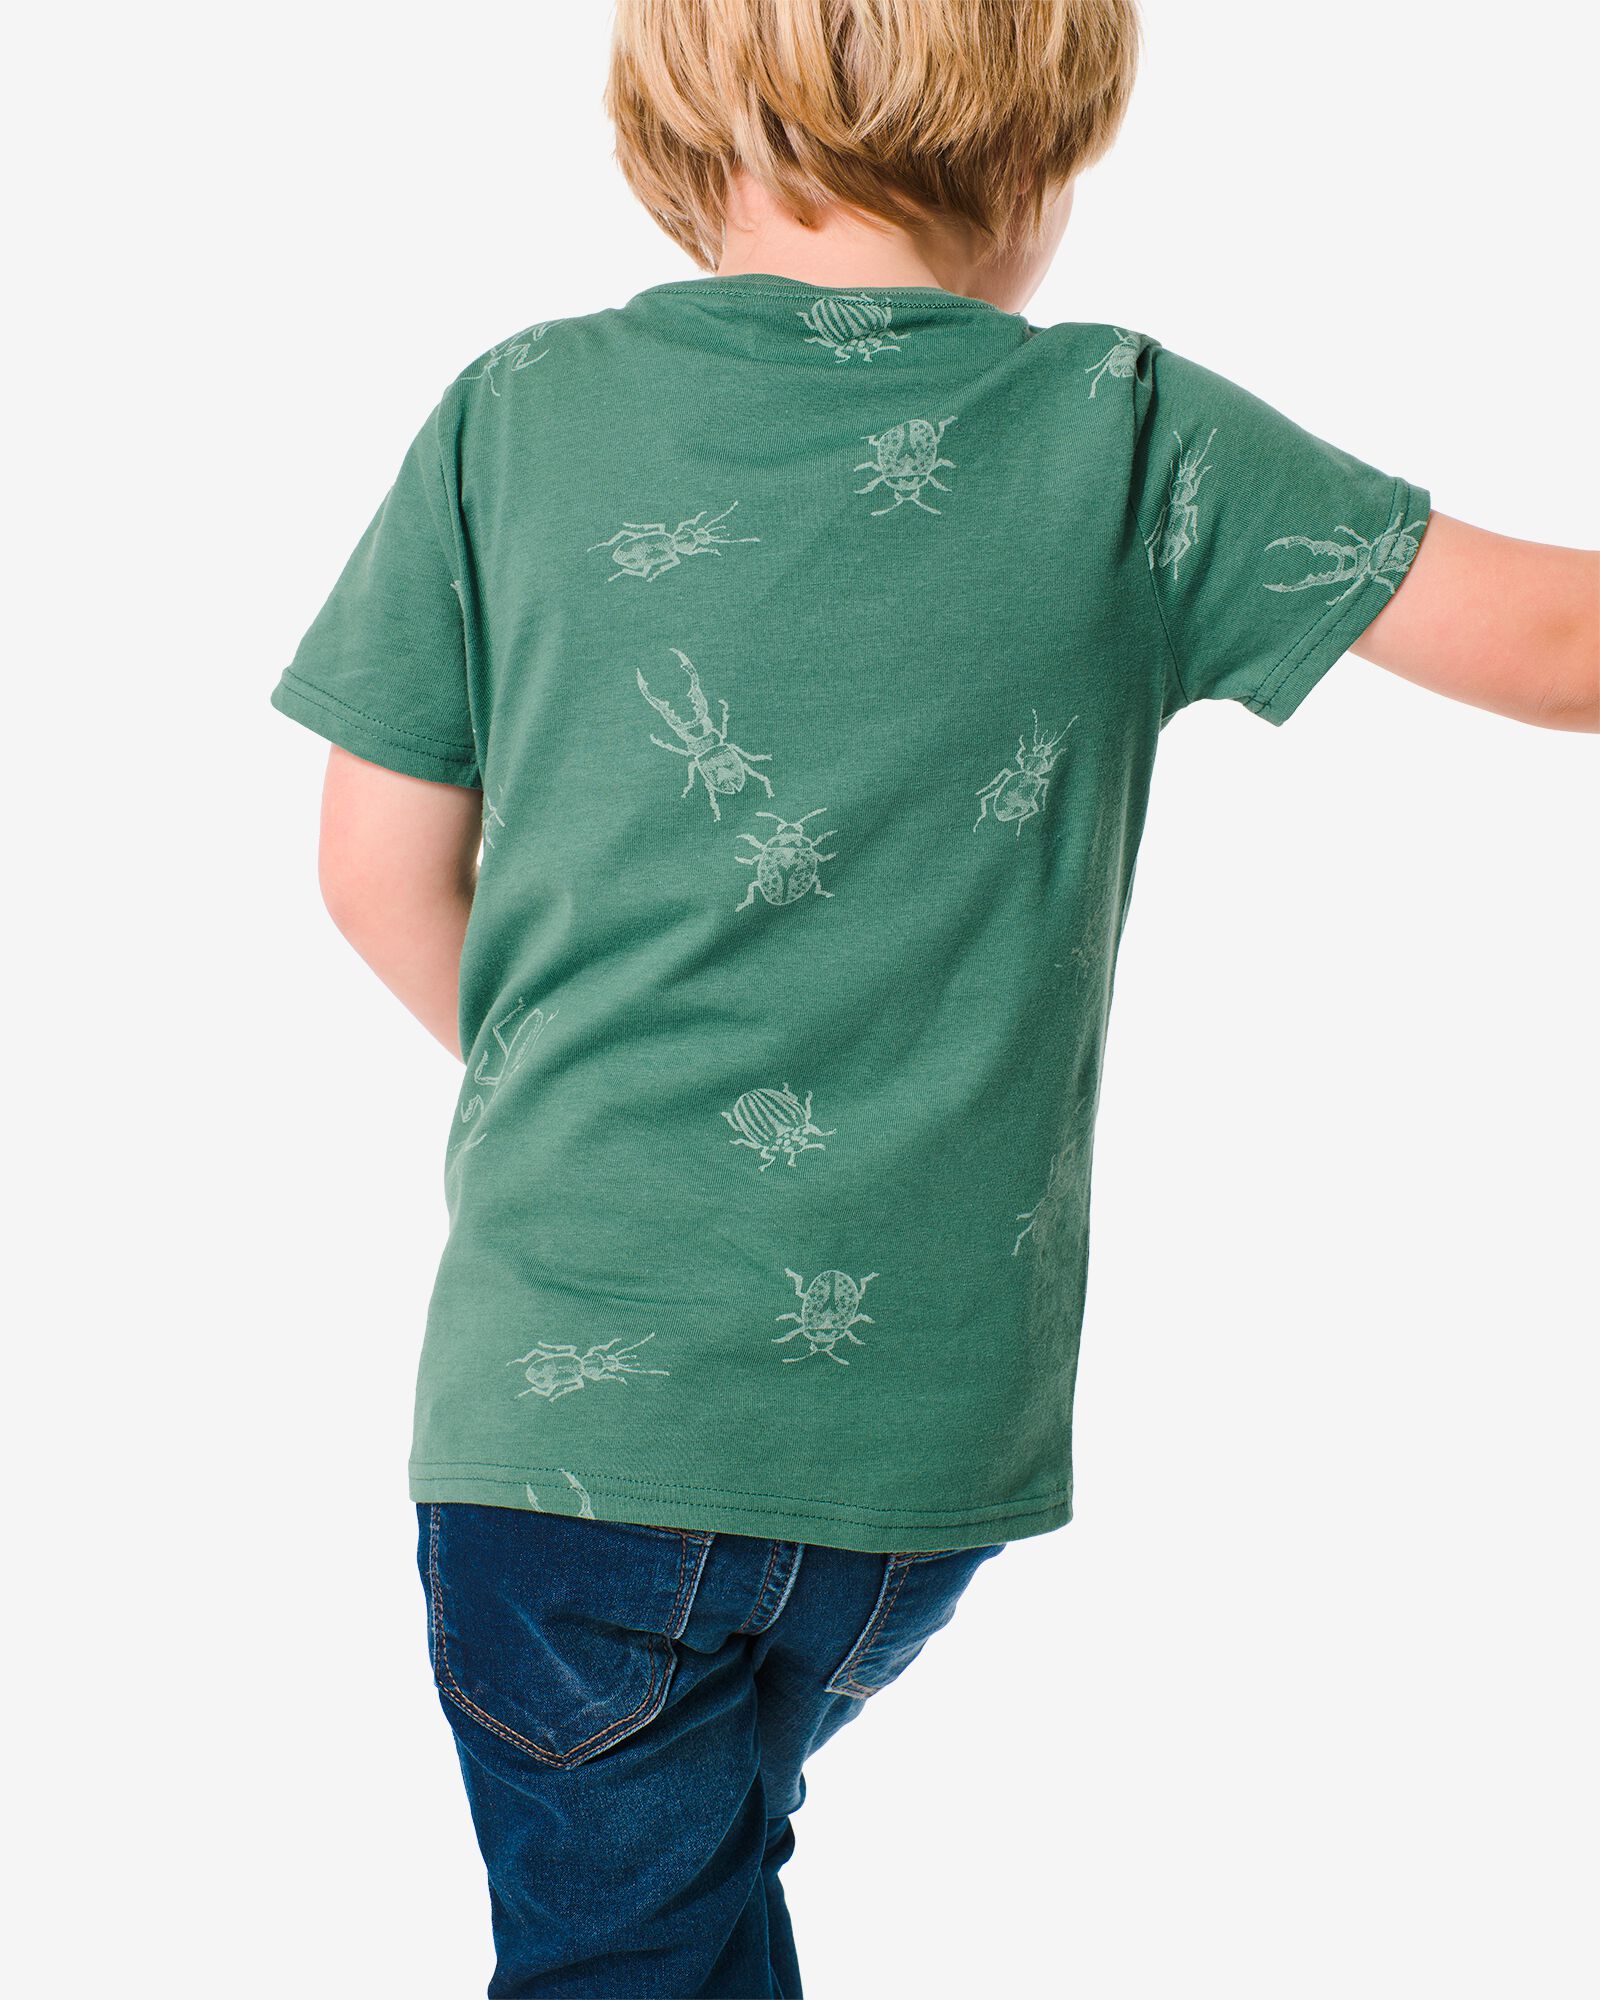 kinder t-shirt insecten groen 98/104 - 30767646 - HEMA